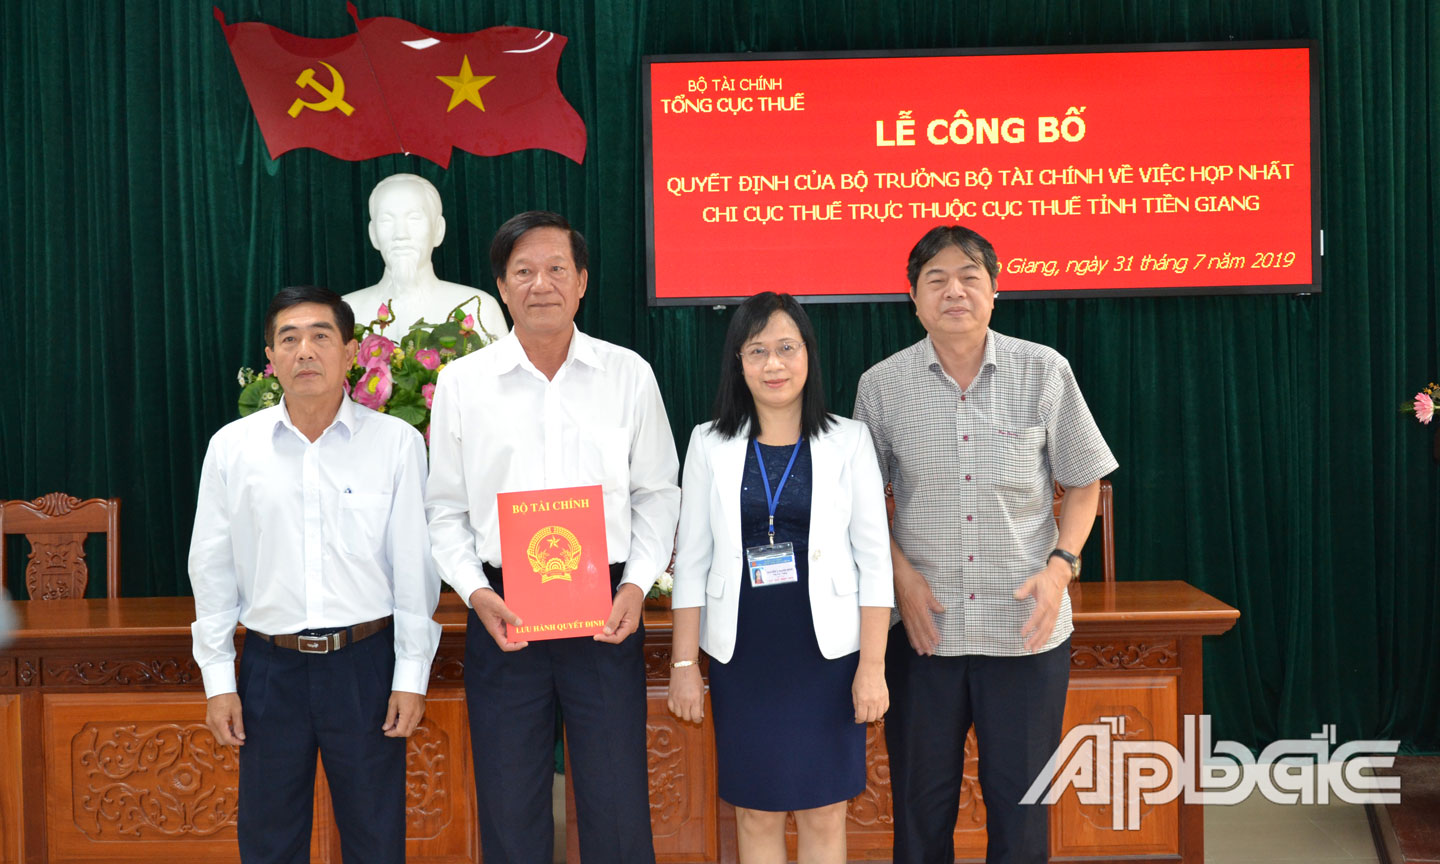 Vụ Tổ chức cán bộ - Tổng cục Thuế trao quyết định của Bộ trưởng Bộ Tài chính về việc hợp nhất Chi cục Thuế trực thuộc Cục Thuế tỉnh Tiền Giang.